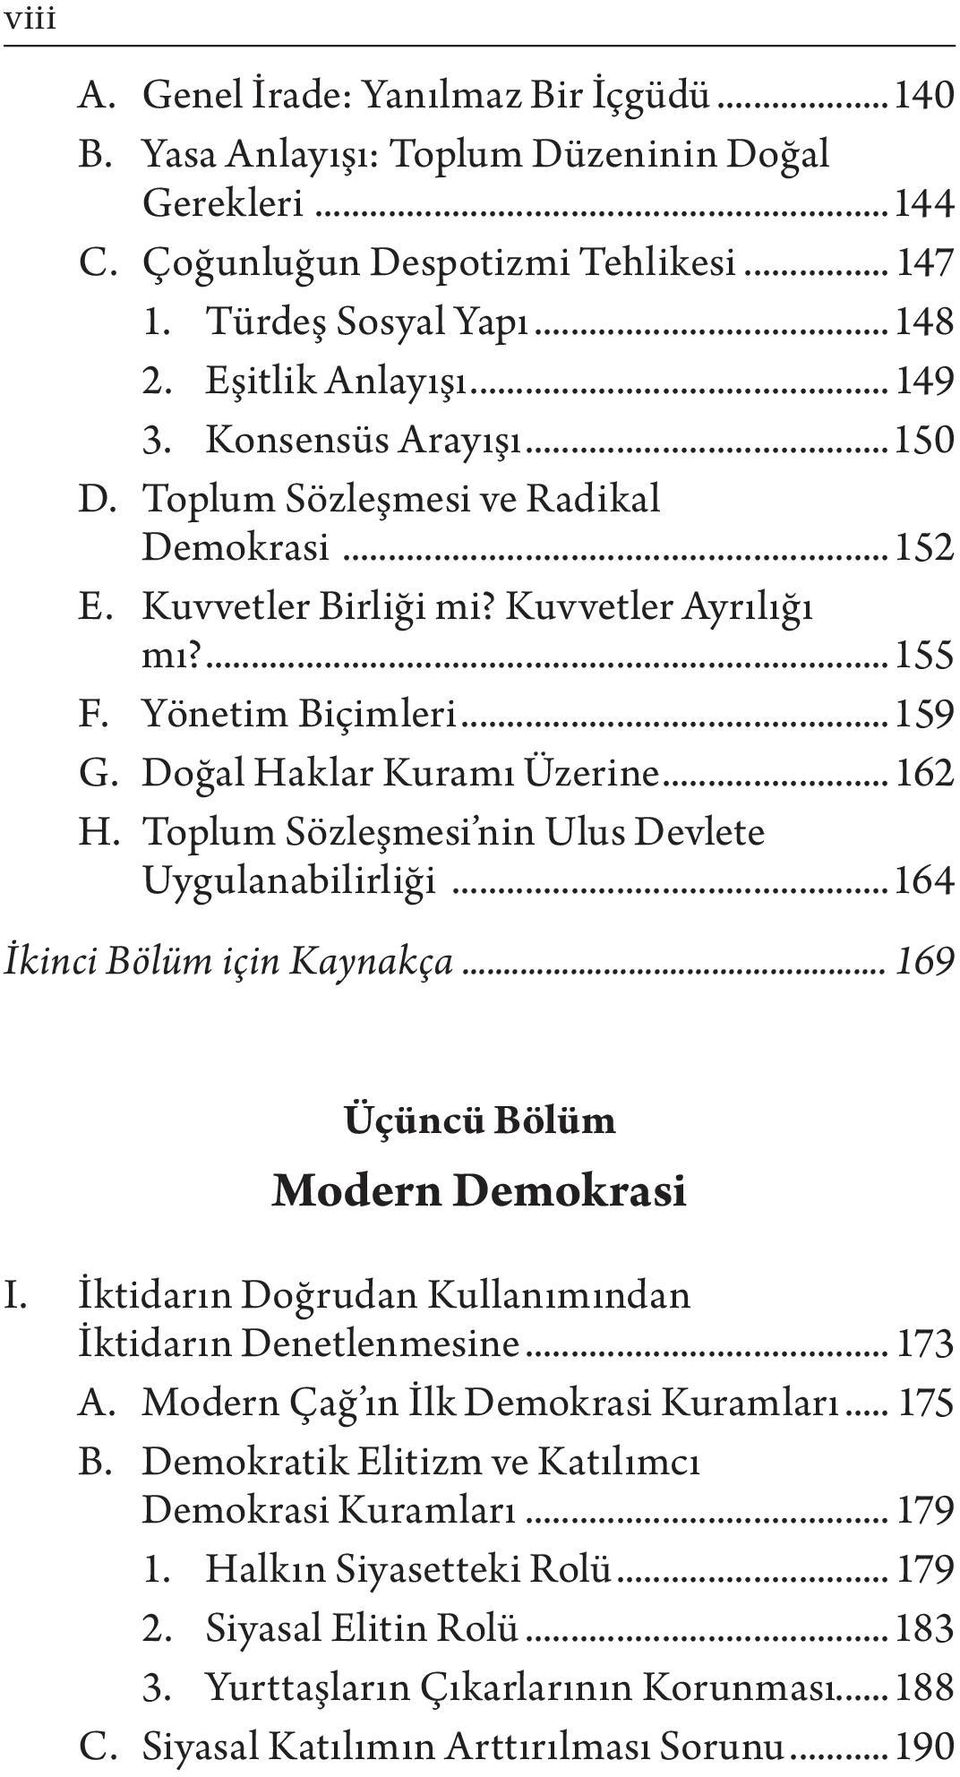 Prof. Dr. OKTAY UYGUN Yeditepe Üniversitesi Hukuk Fakültesi Öğretim Üyesi  DEMOKRASİ. Tarihsel, Siyasal ve Felsefi Boyutlar - PDF Ücretsiz indirin